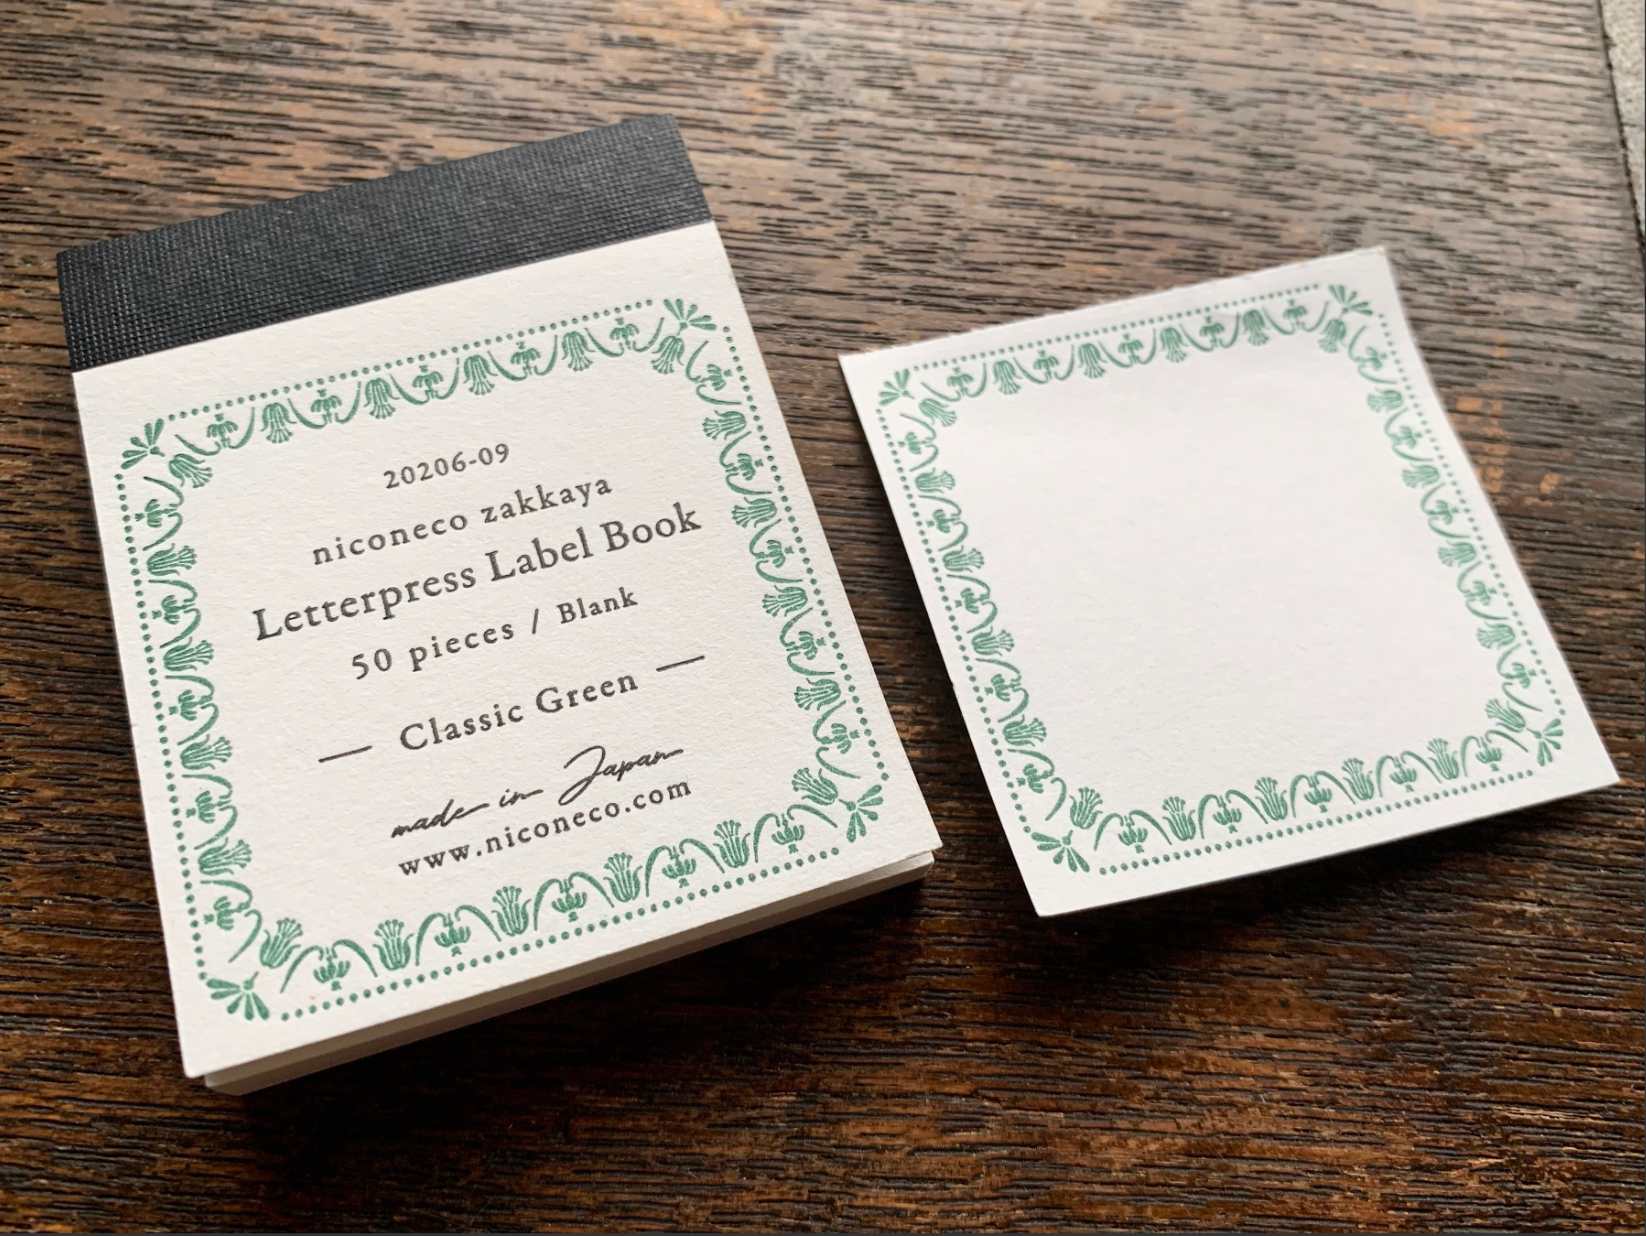 [Letterpress printing] Label book Vol.2 (Classic green) niconeco collaboration